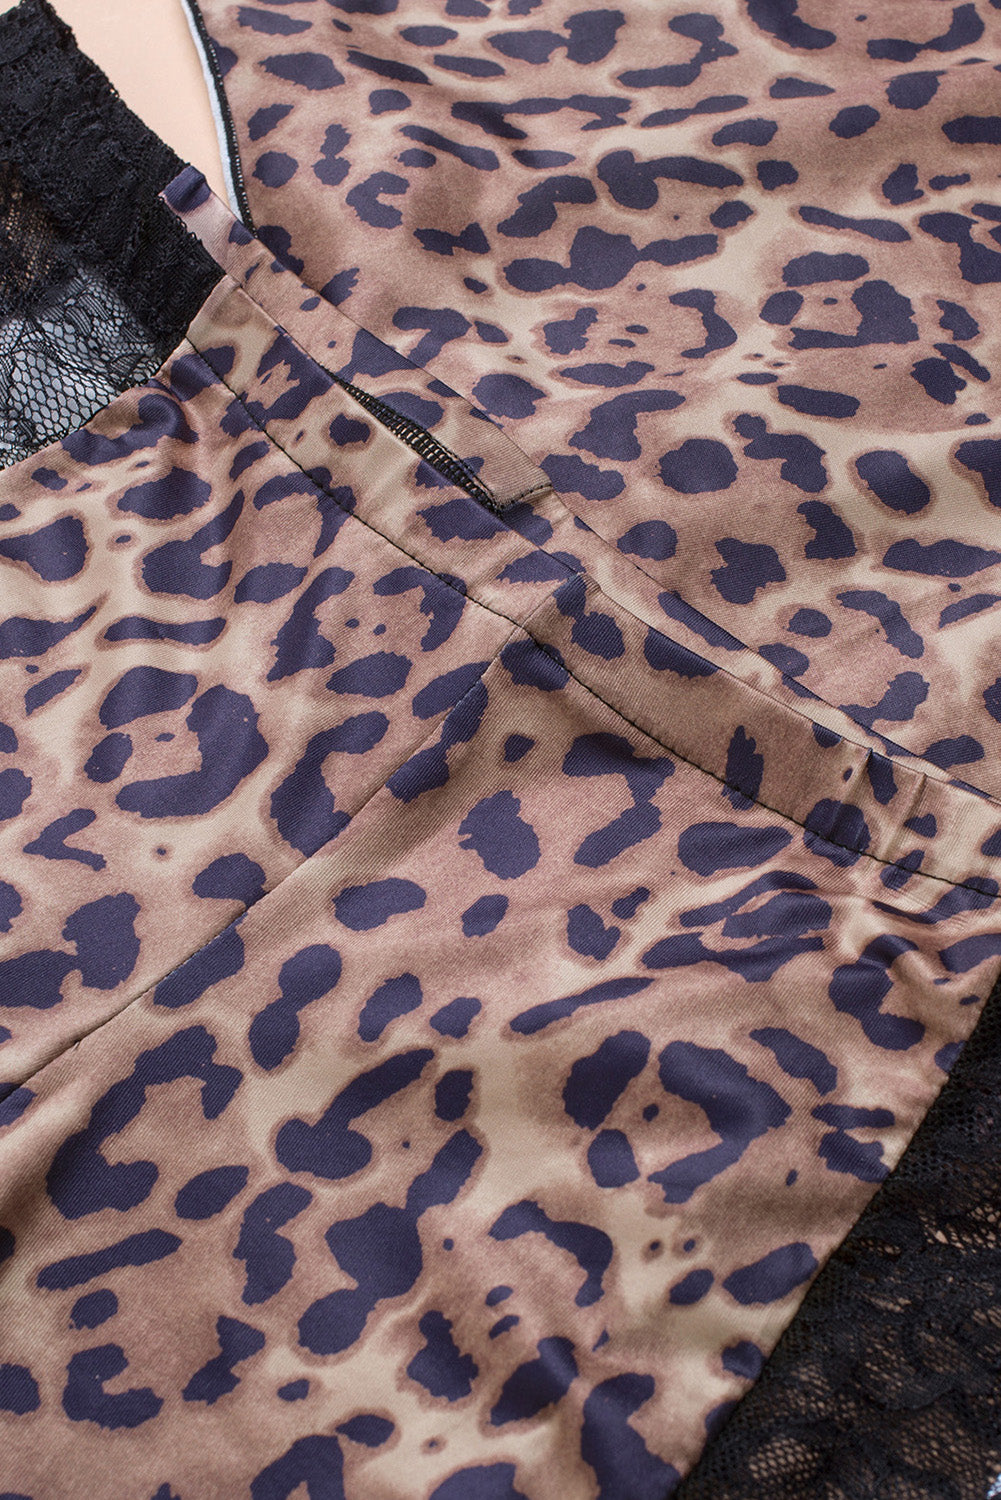 Leopard Plus Size Leopard Cami Shorts Two-Piece Lingerie Set